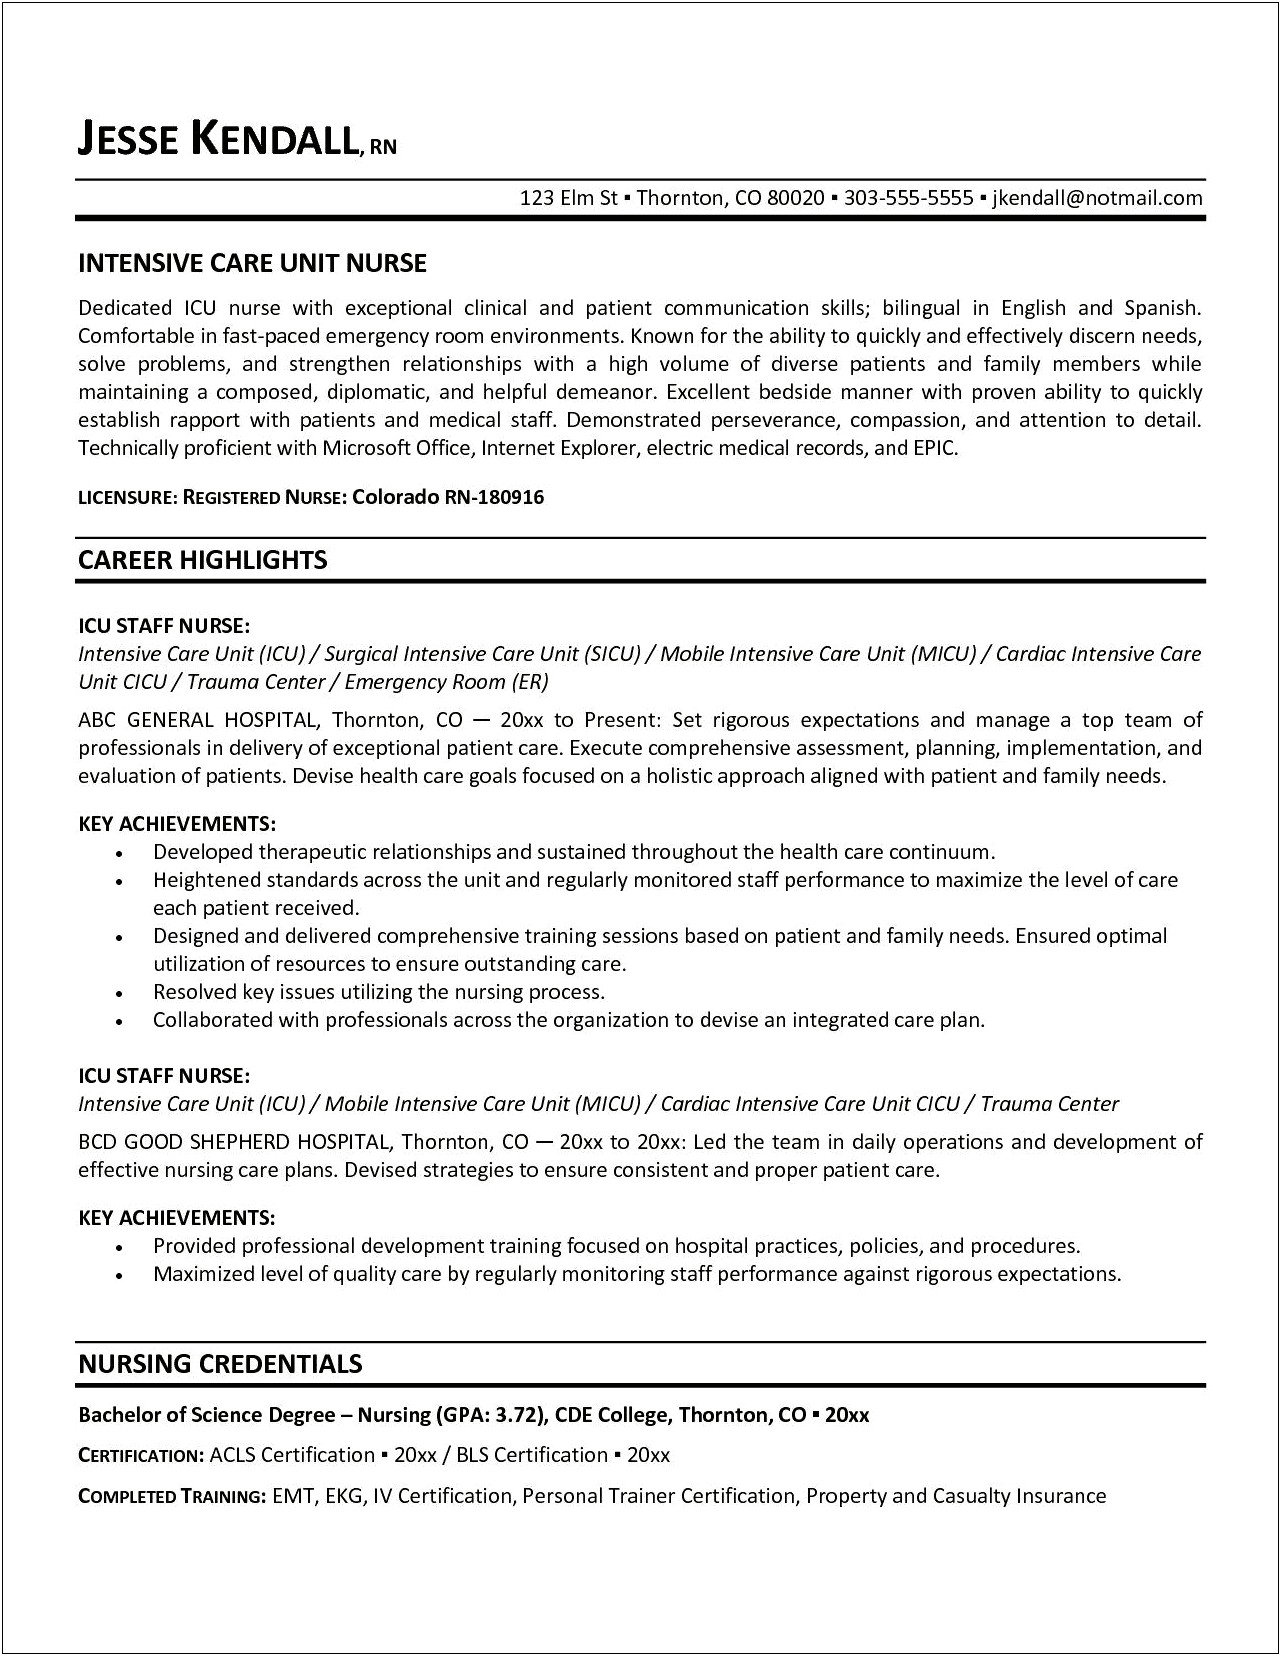 Nursing Resume Objective Acute Care